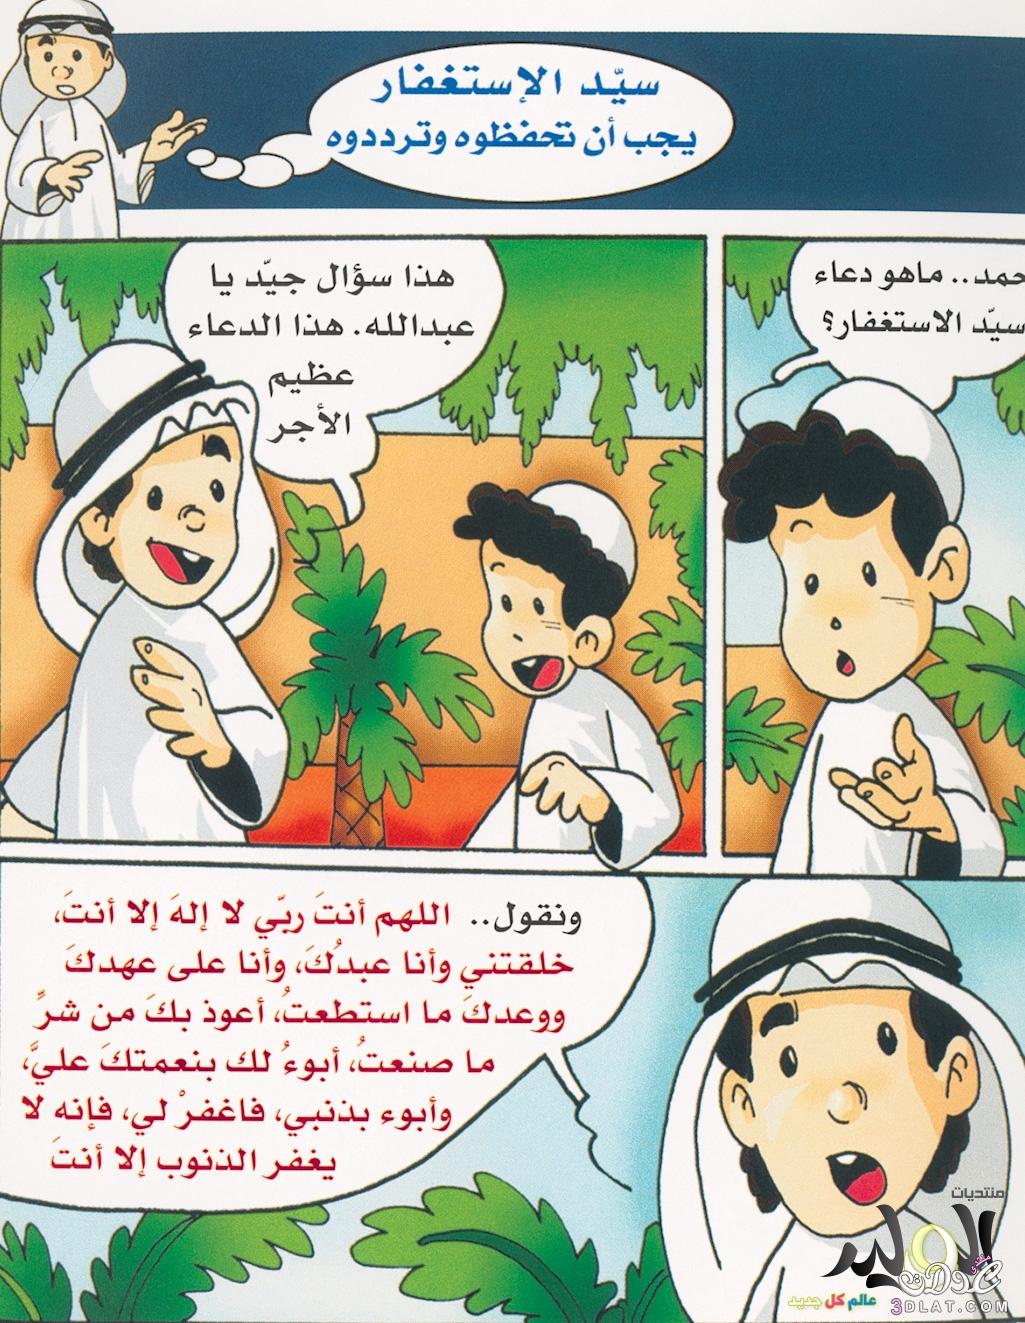 حكايات دينية مصورة للصغار,قصص  اطفال  دينية  بالصور  ,  قصص  اطفال  اسلامية  مصورة